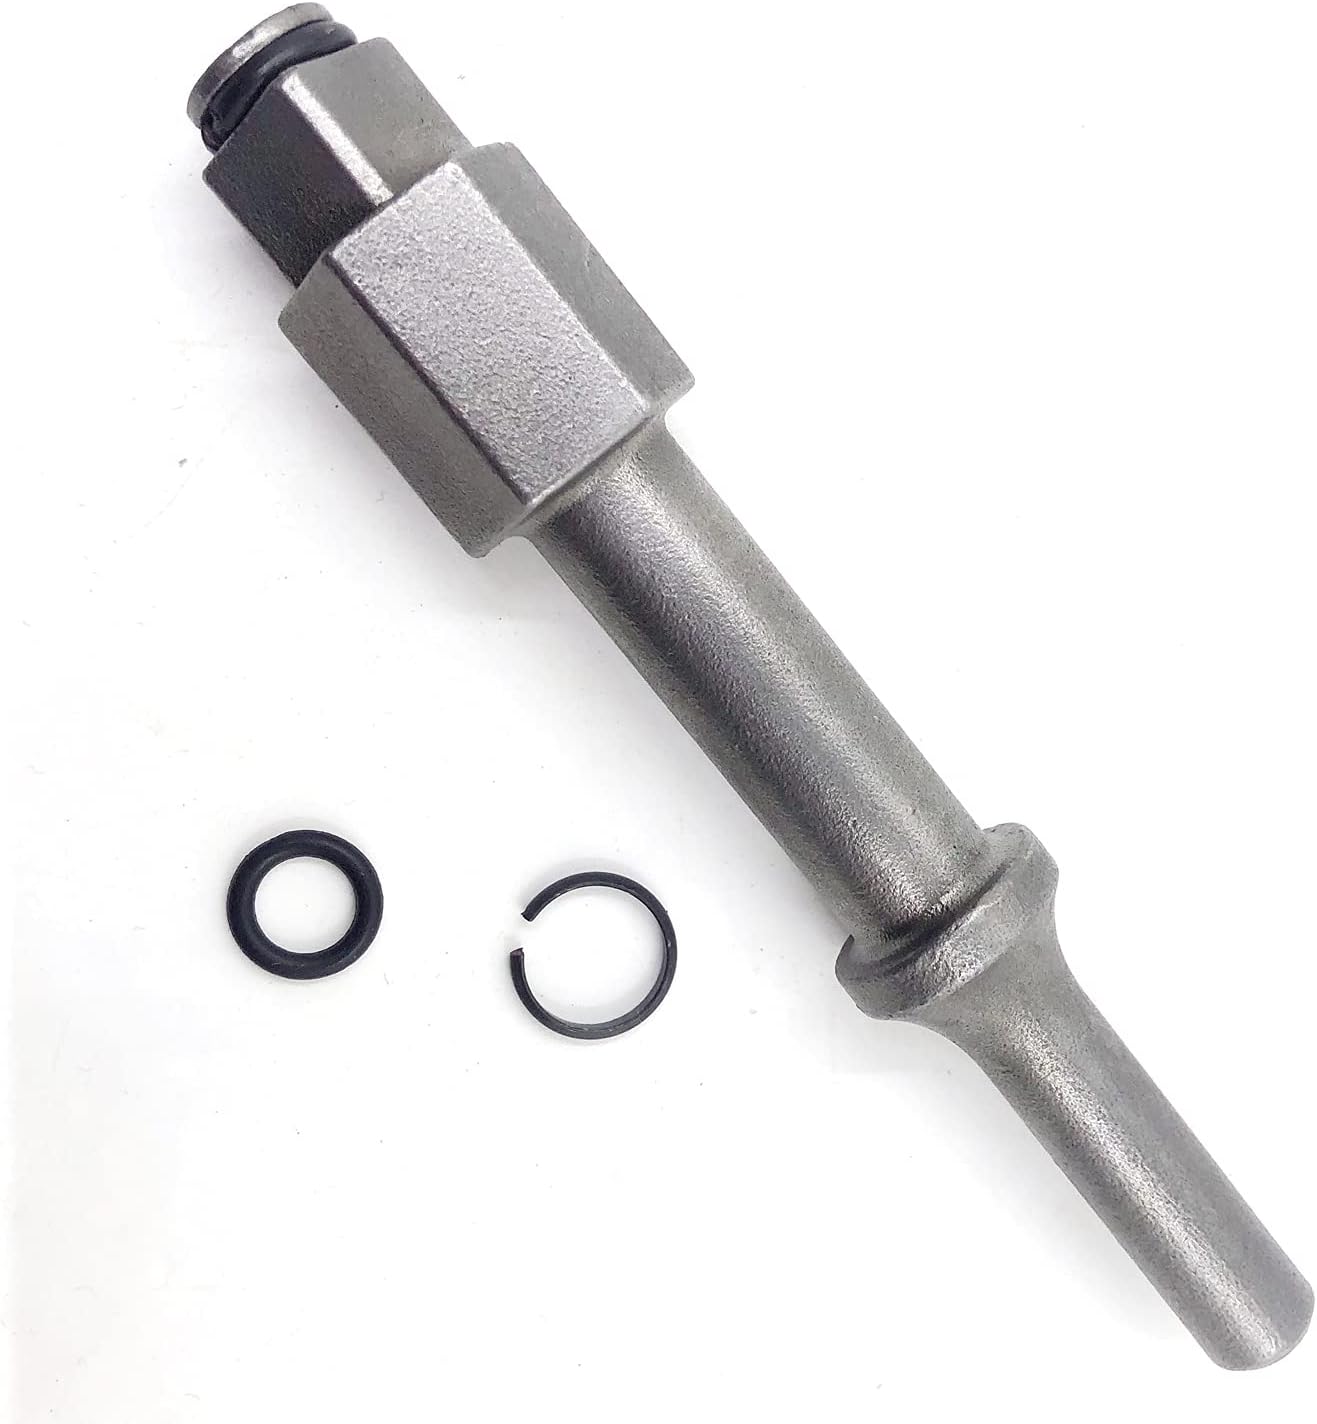 Wilin Shake'n Break Pneumatic Hammer Bolt Breaker Air Hammer Attachment Scaler 1/2 Inch Chisel for Removing Stubborn Fasteners Torx B